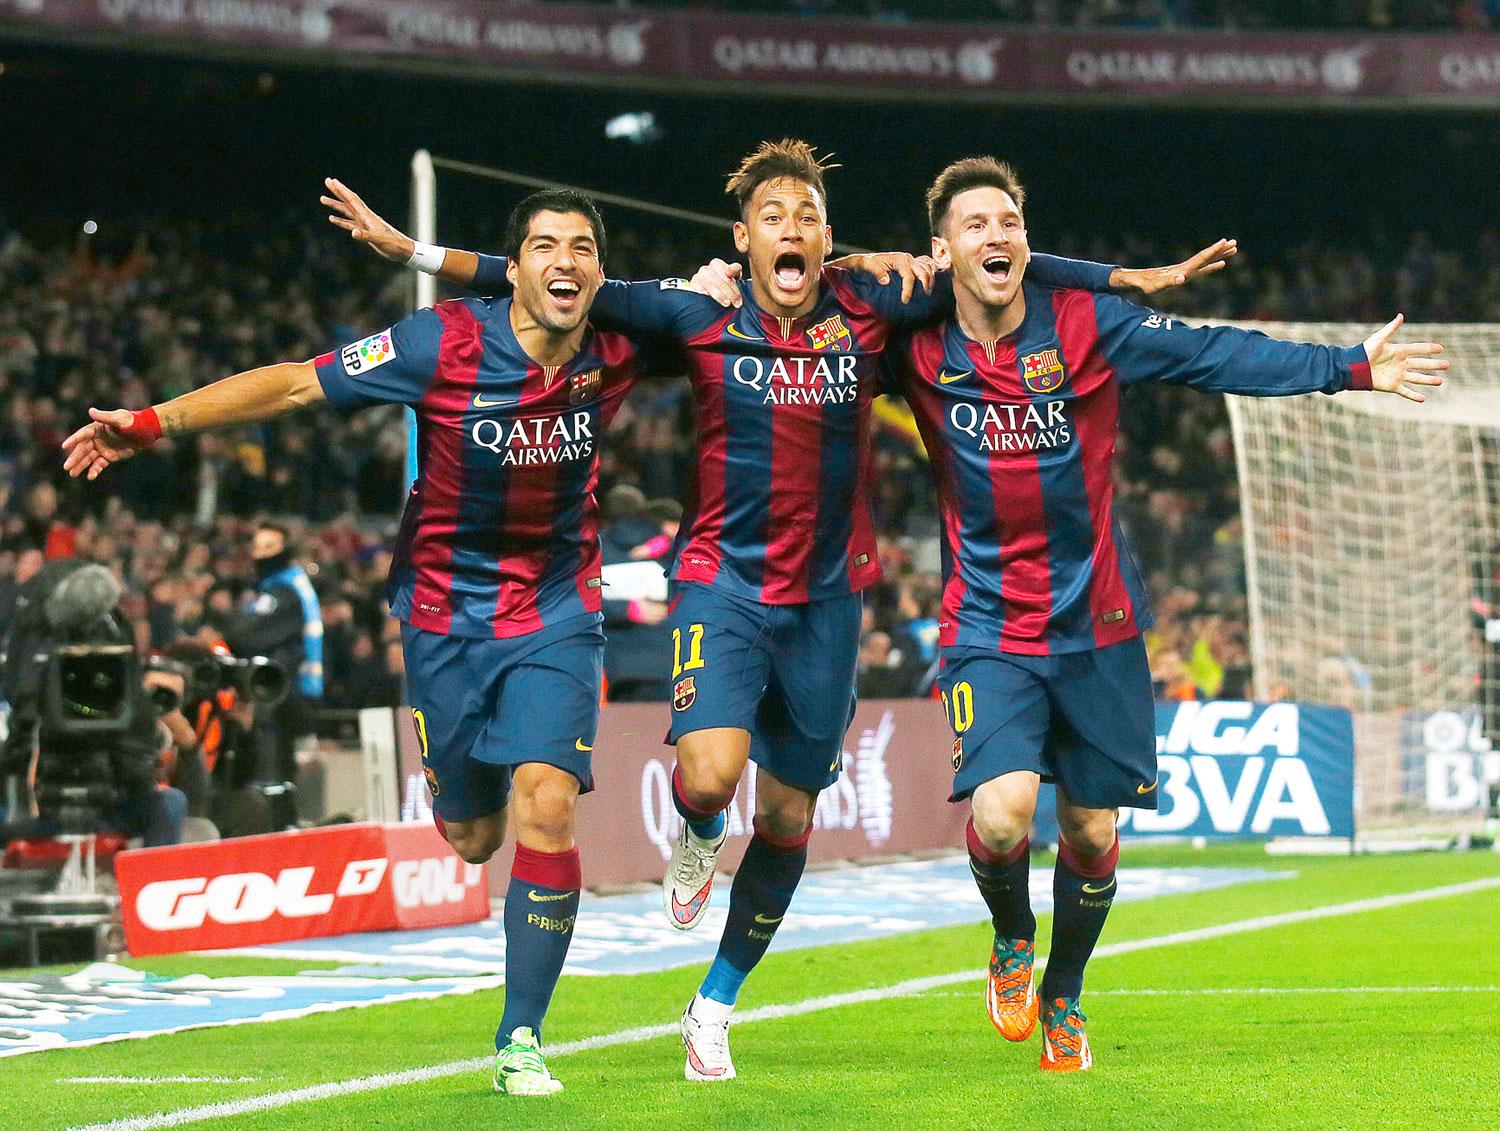 Mesterhármas: Suarez, Neymar, Messi